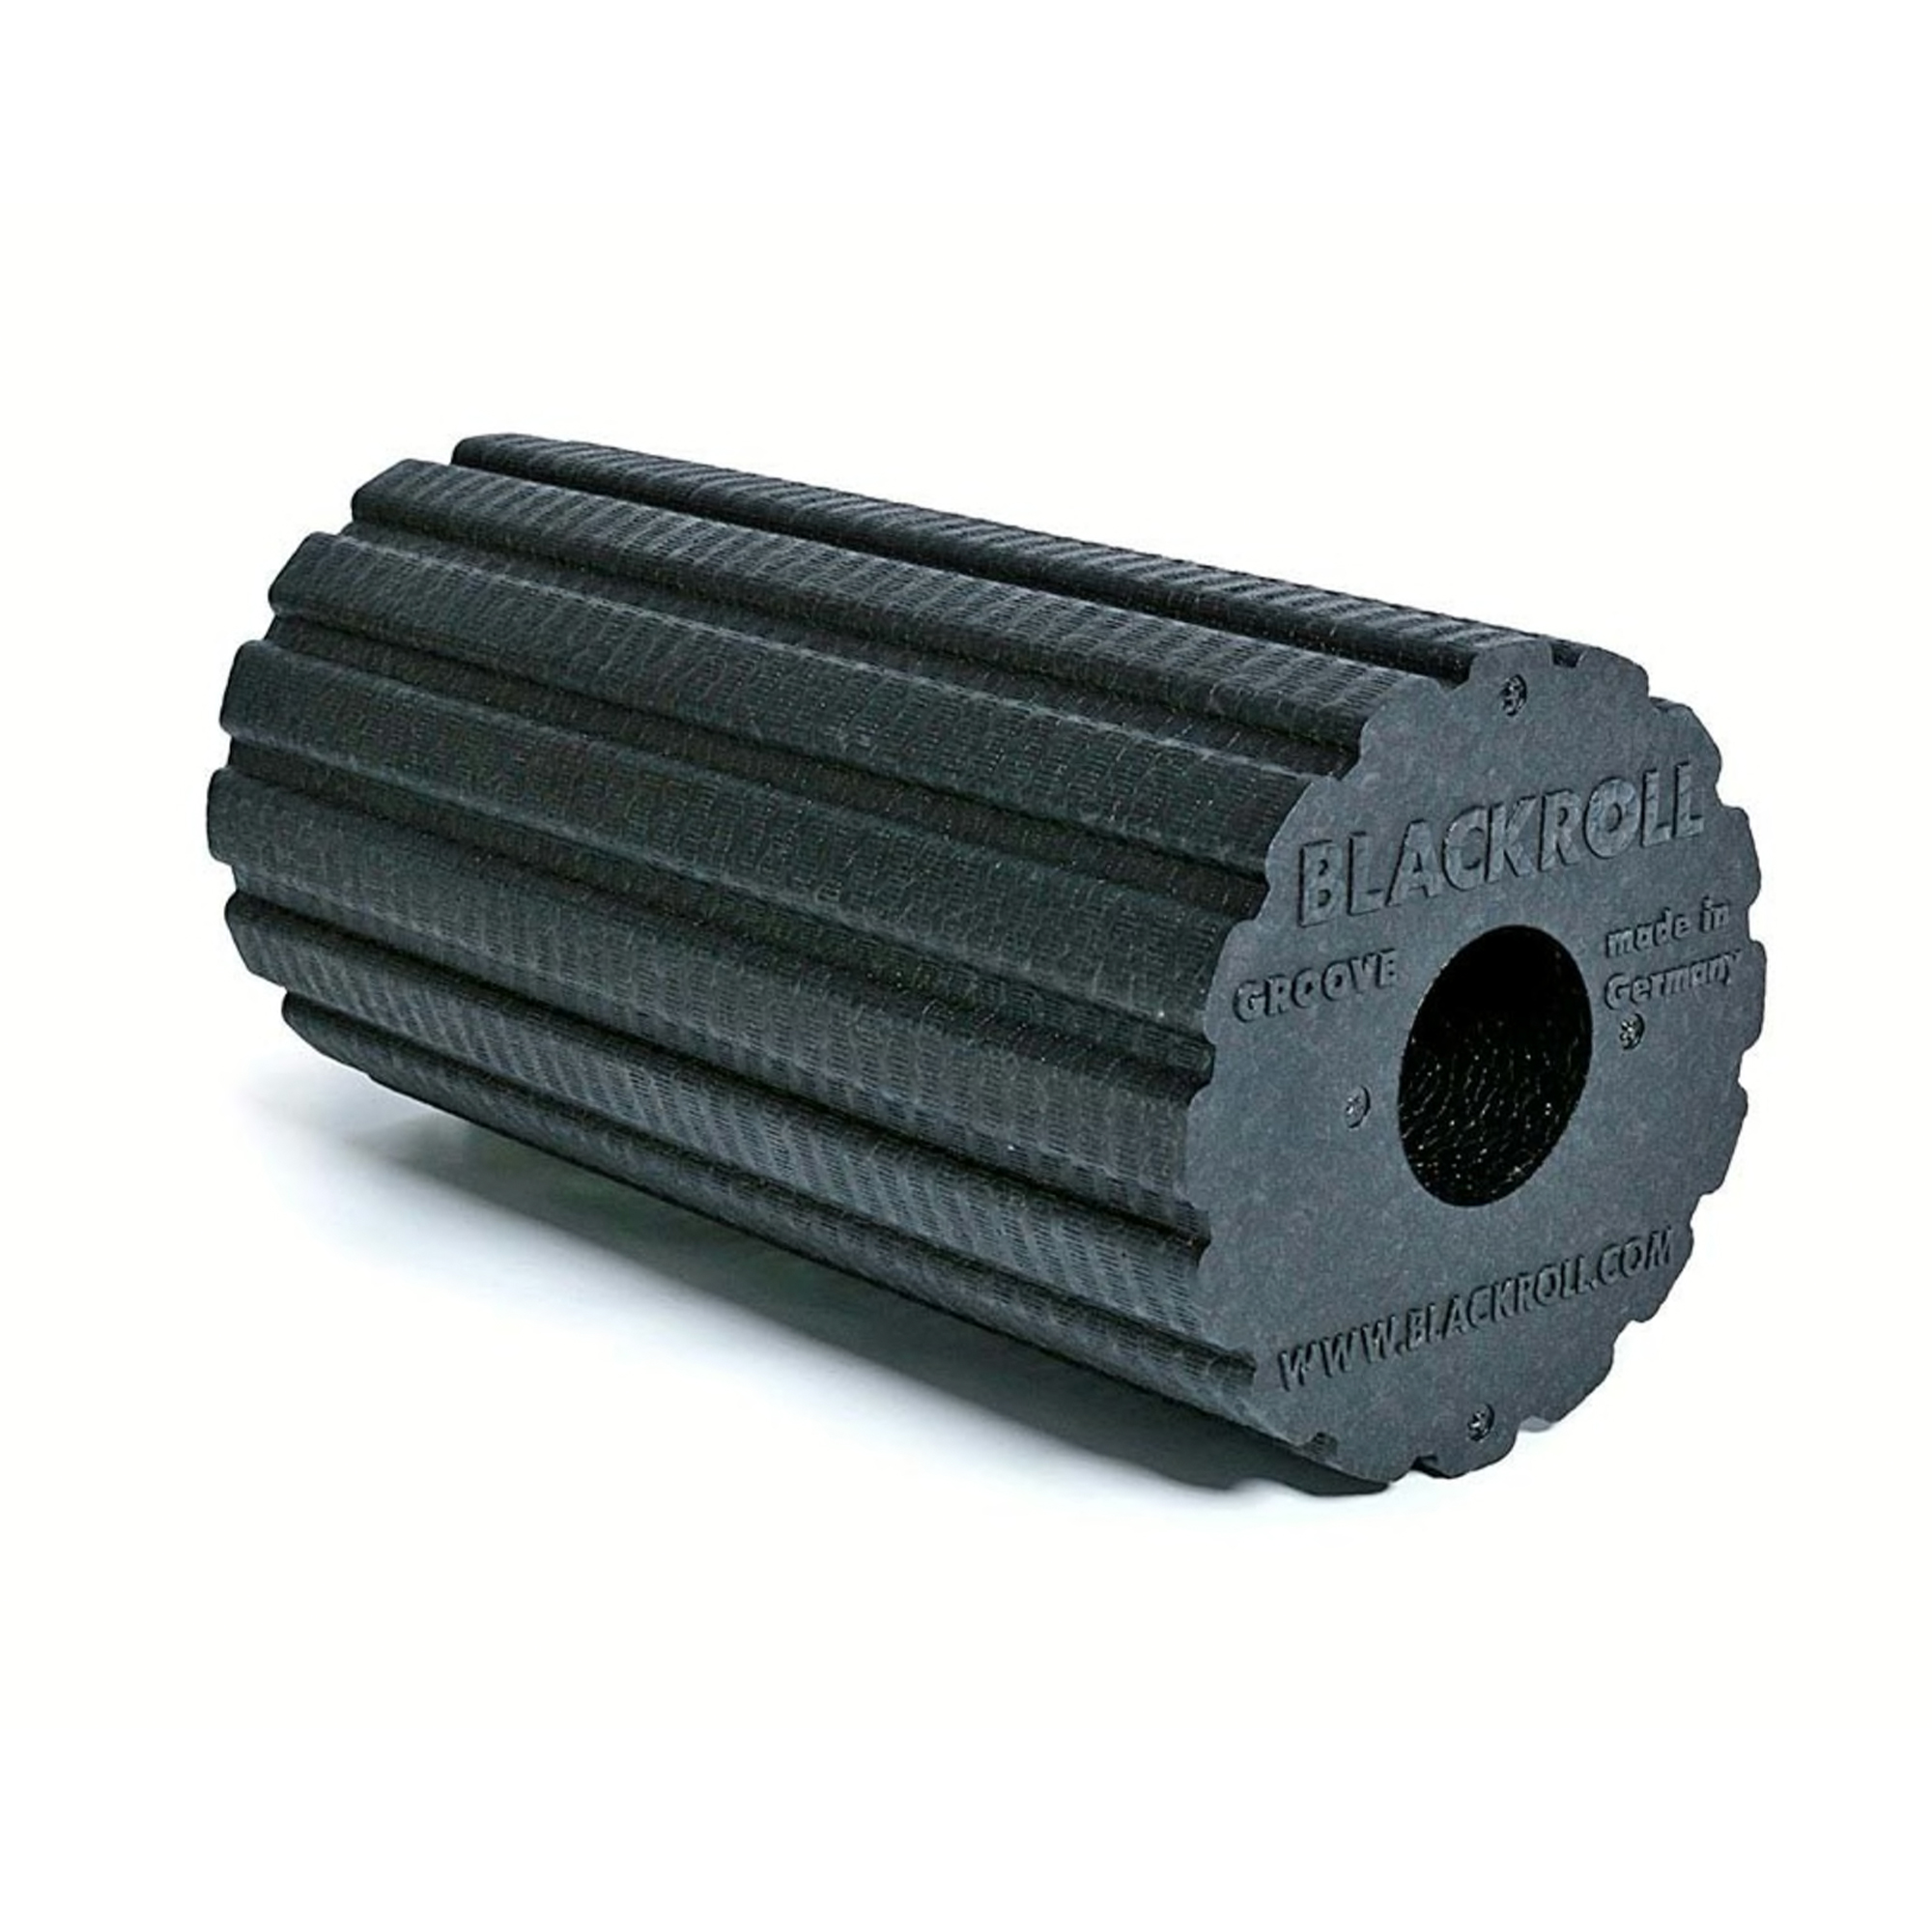 Brug Blackroll Groove Standard Foam Roller - 30 x 15 cm til en forbedret oplevelse